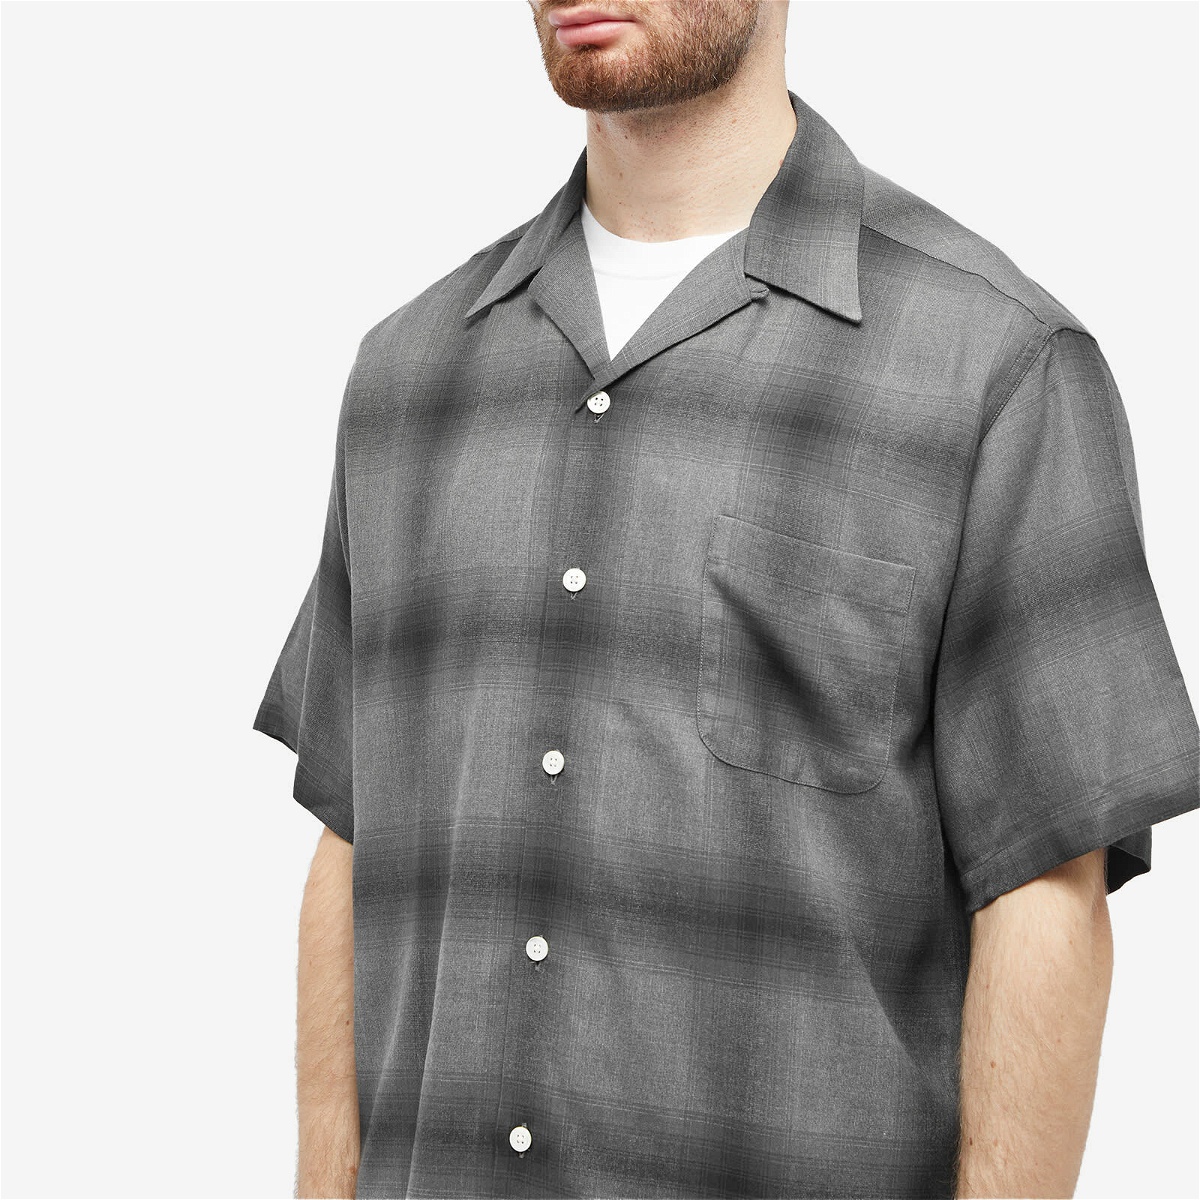 Wacko Maria Men's Short Sleeve Type 2 Ombre Check Open Collar Shir in  Gray/Black